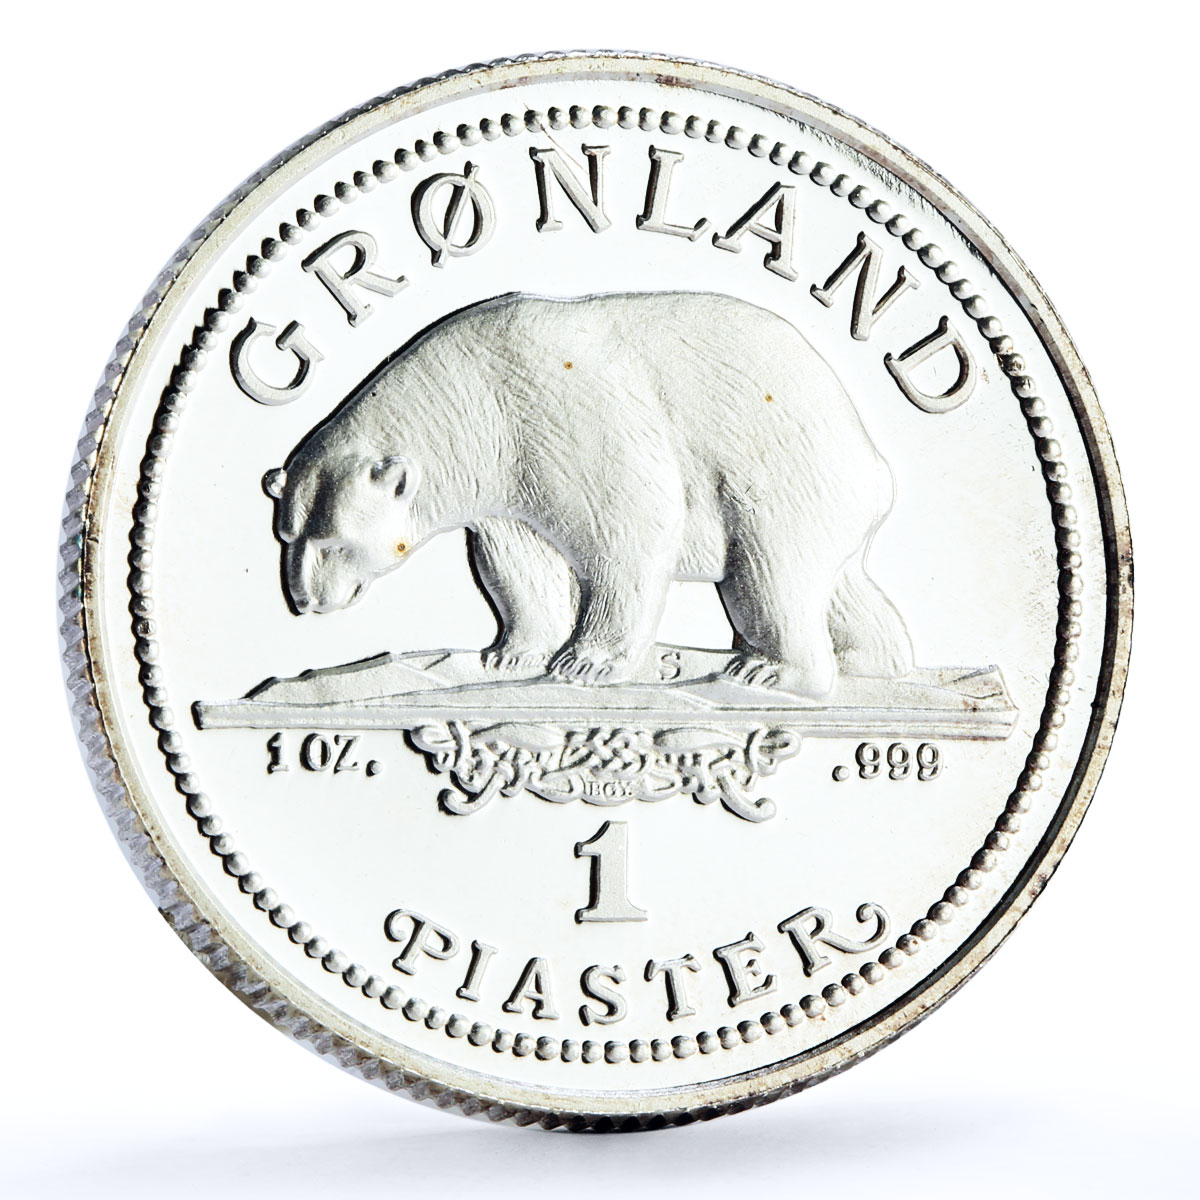 Denmark Greenland 1 piaster Endangered Wildlife Polar Bear Fauna Ag coin 1989